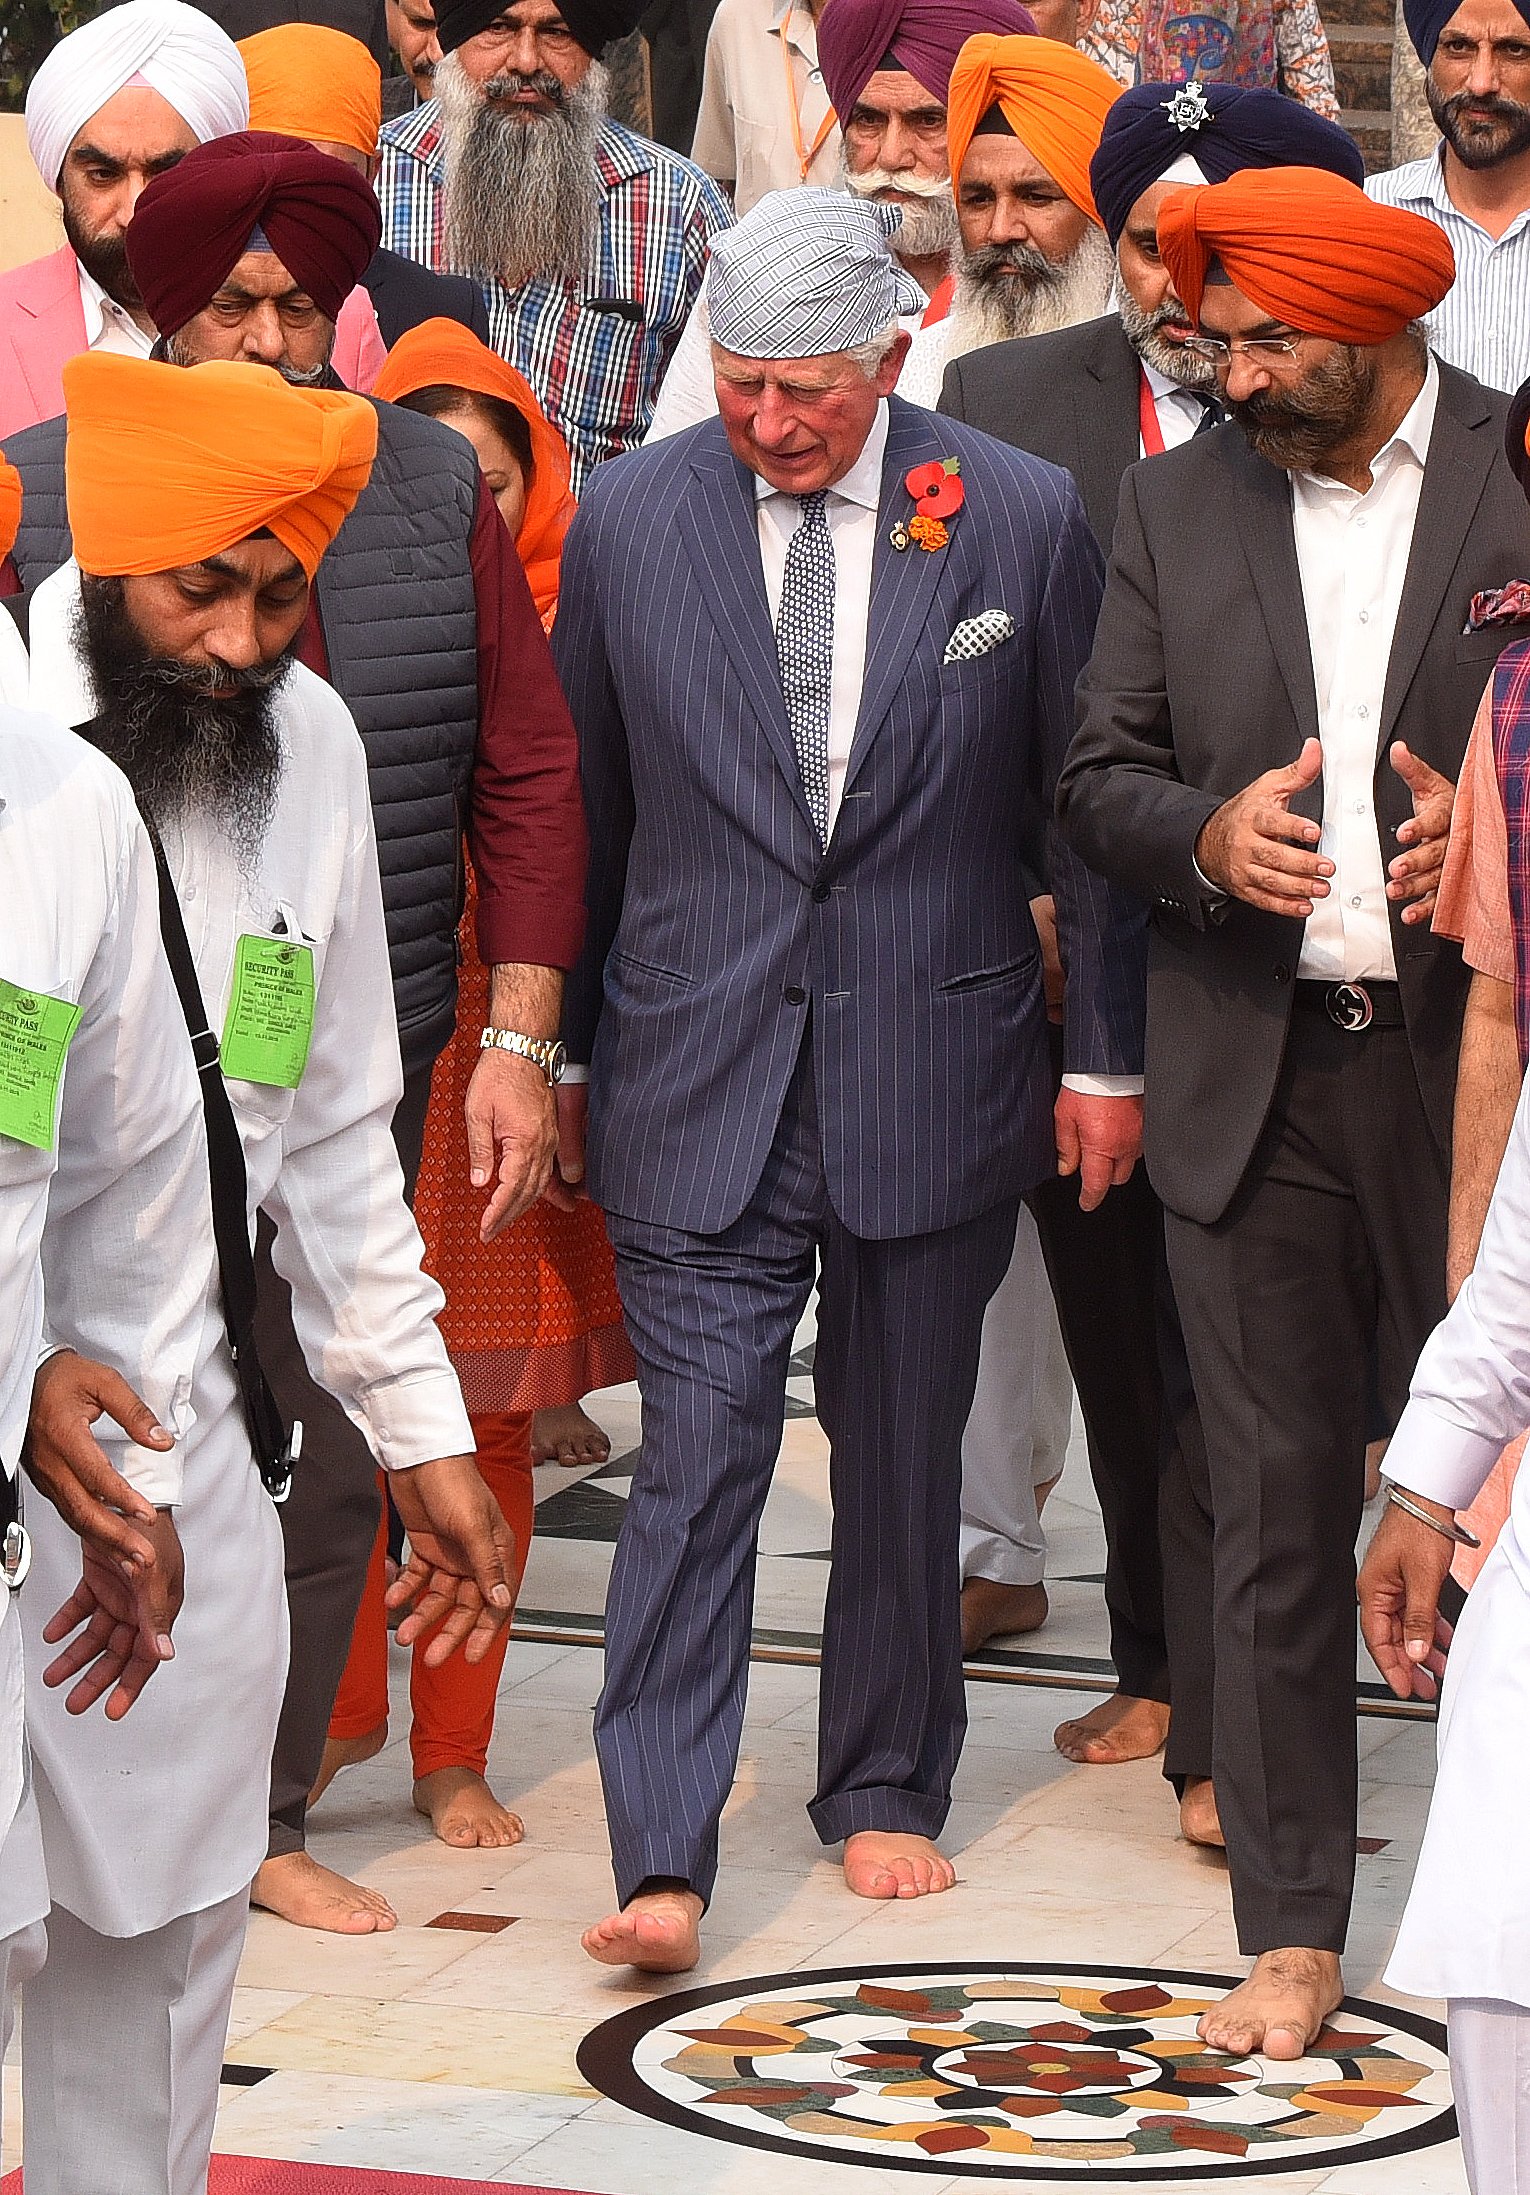 Prinz Charles während seines Besuchs in Gurudwara Bangla Sahib zur Feier des 550. Geburtstags von Guru Nanak am 13. November 2019 in Neu-Delhi, Indien | Quelle: Getty Images